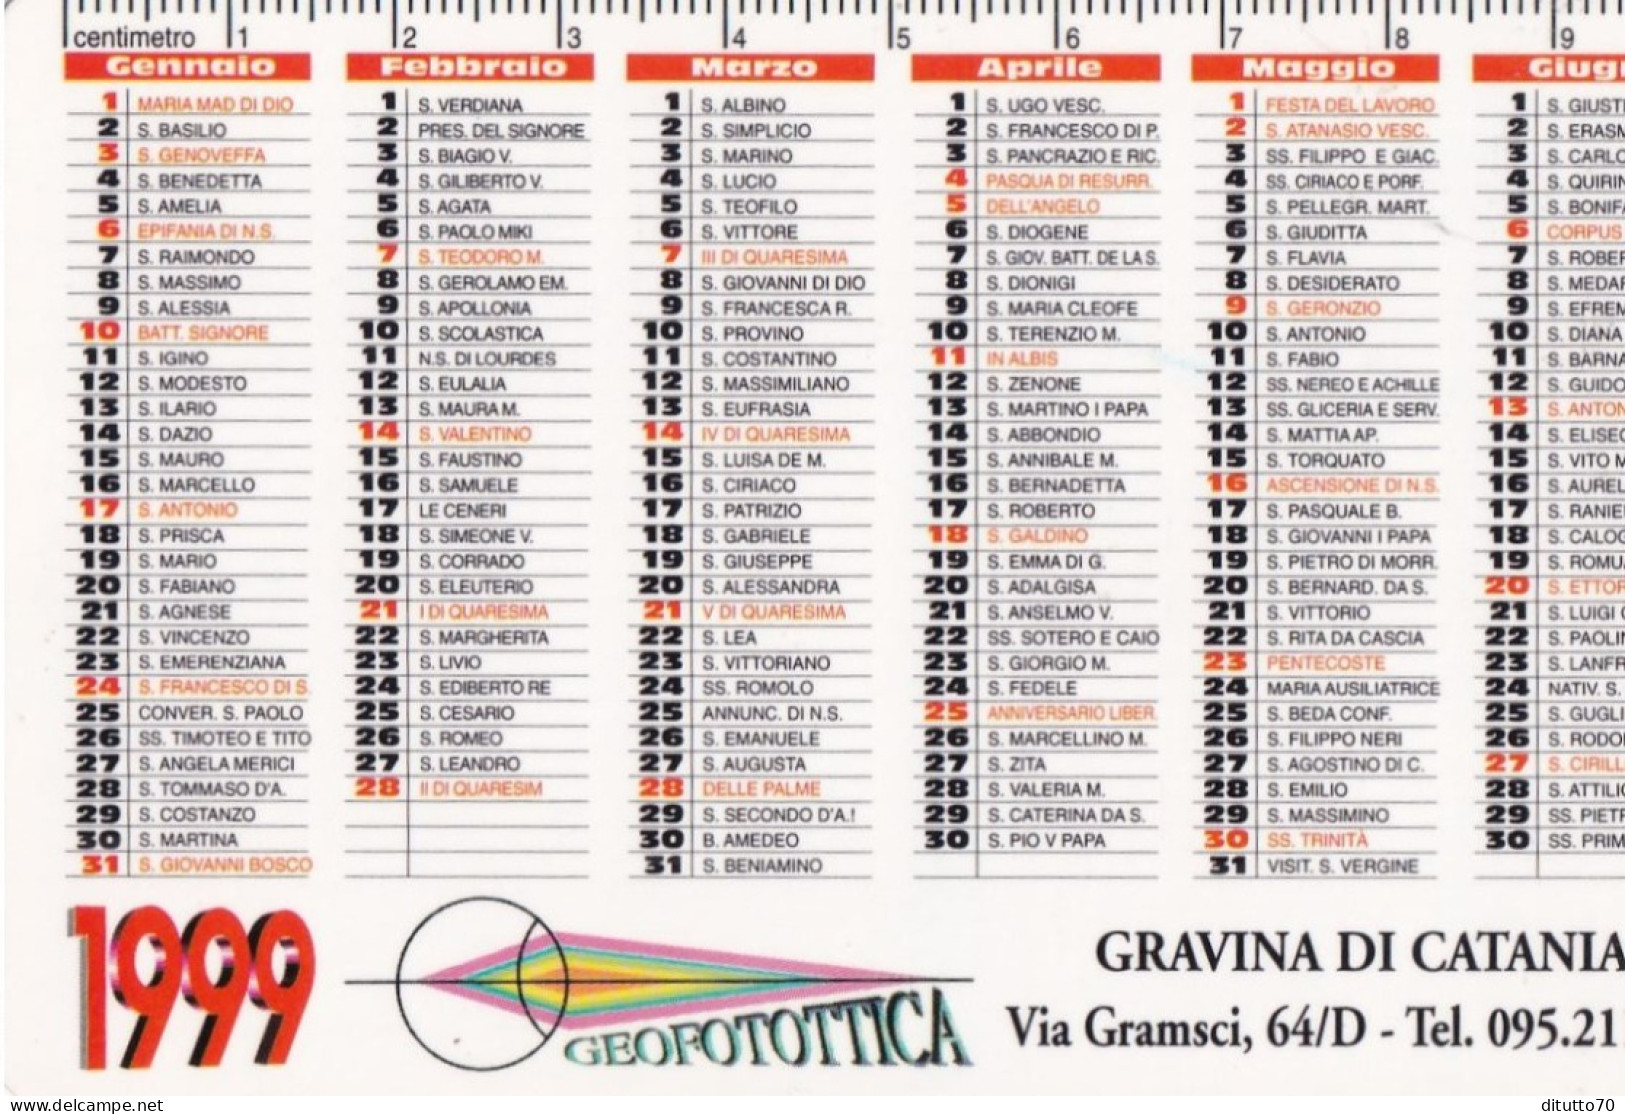 Calendarietto - Geofotottica - Gravina Di Catania - Anno 1999 - Tamaño Pequeño : 1991-00